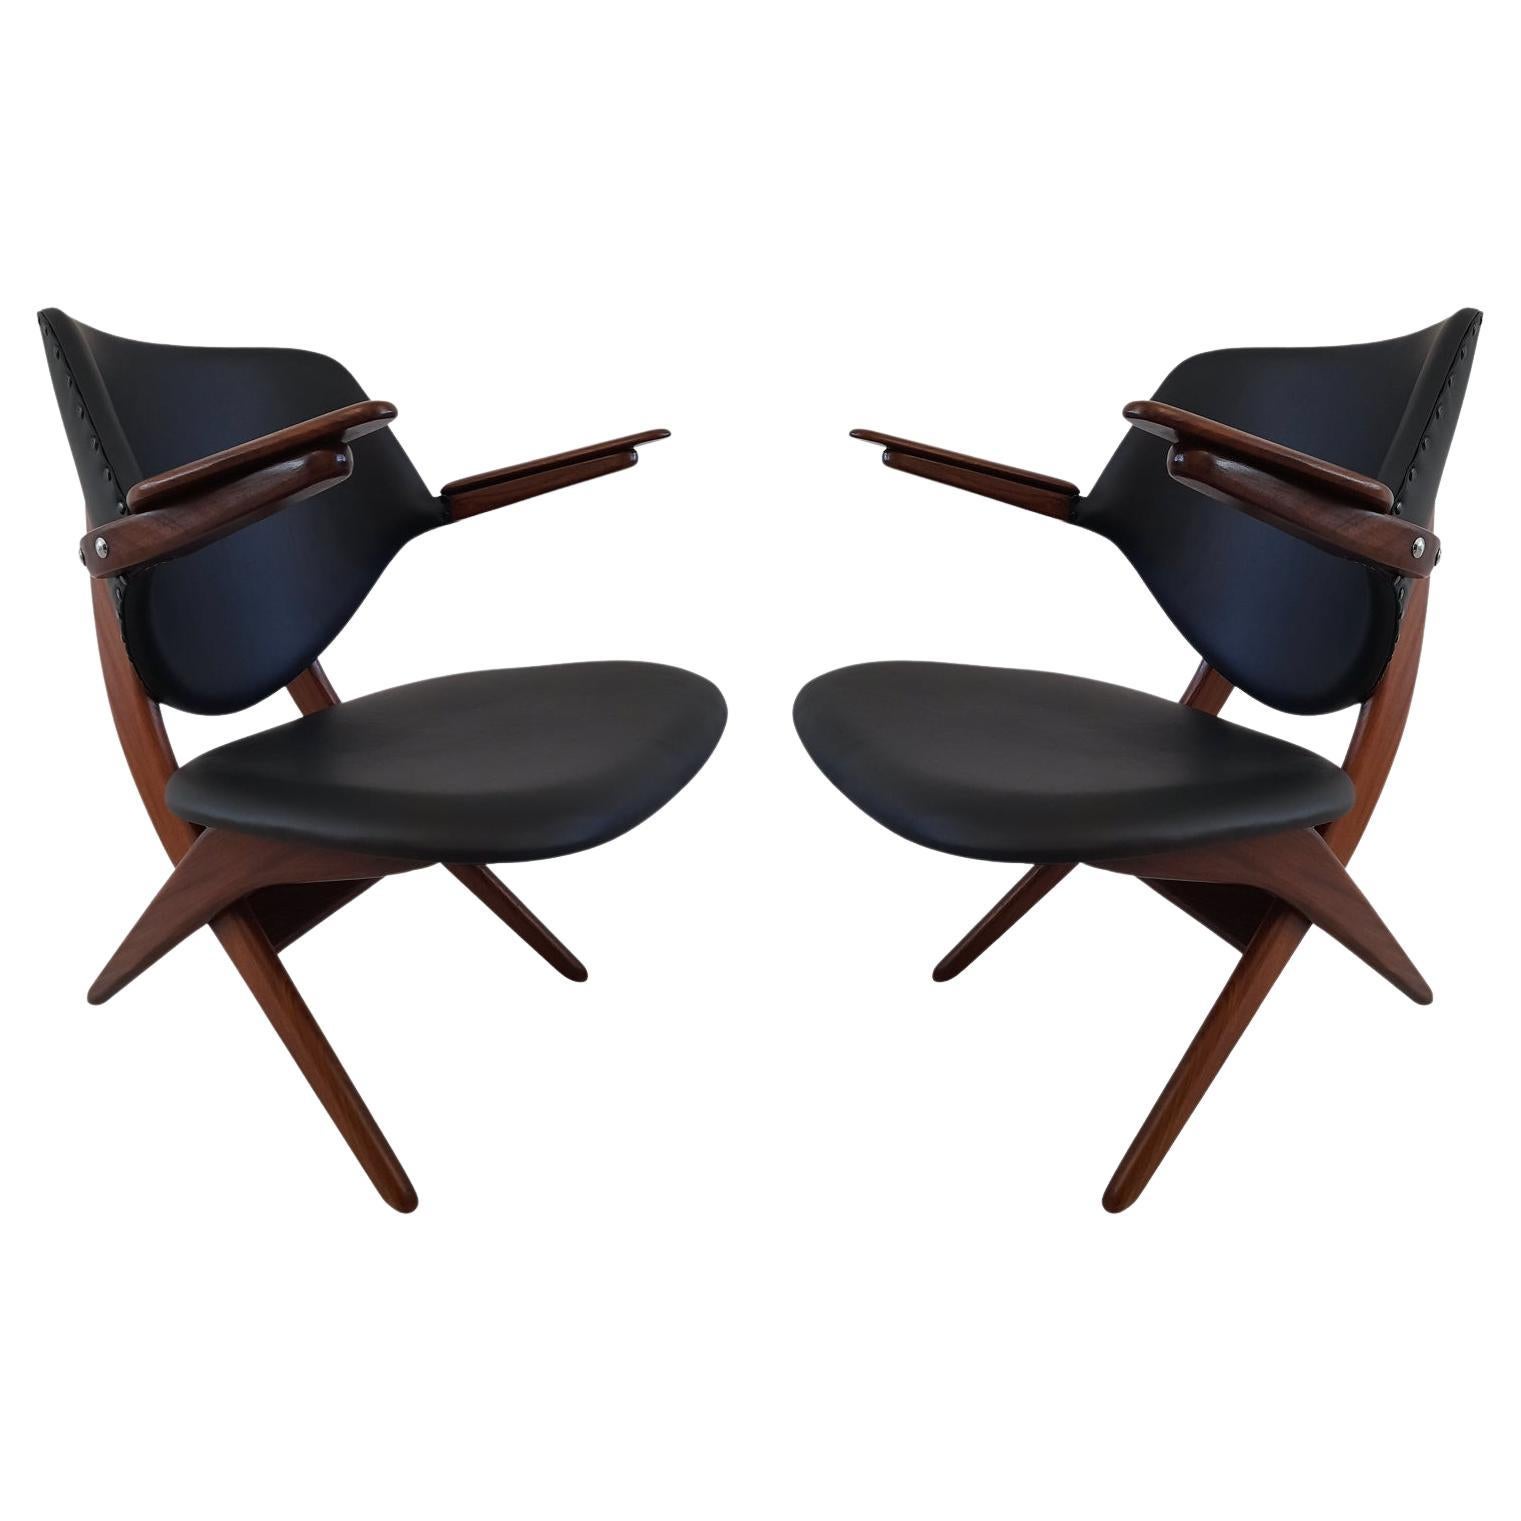 Set of 2 Louis Van Teeffelen Pelican Armchairs for Webe in Black Leather, 1960s